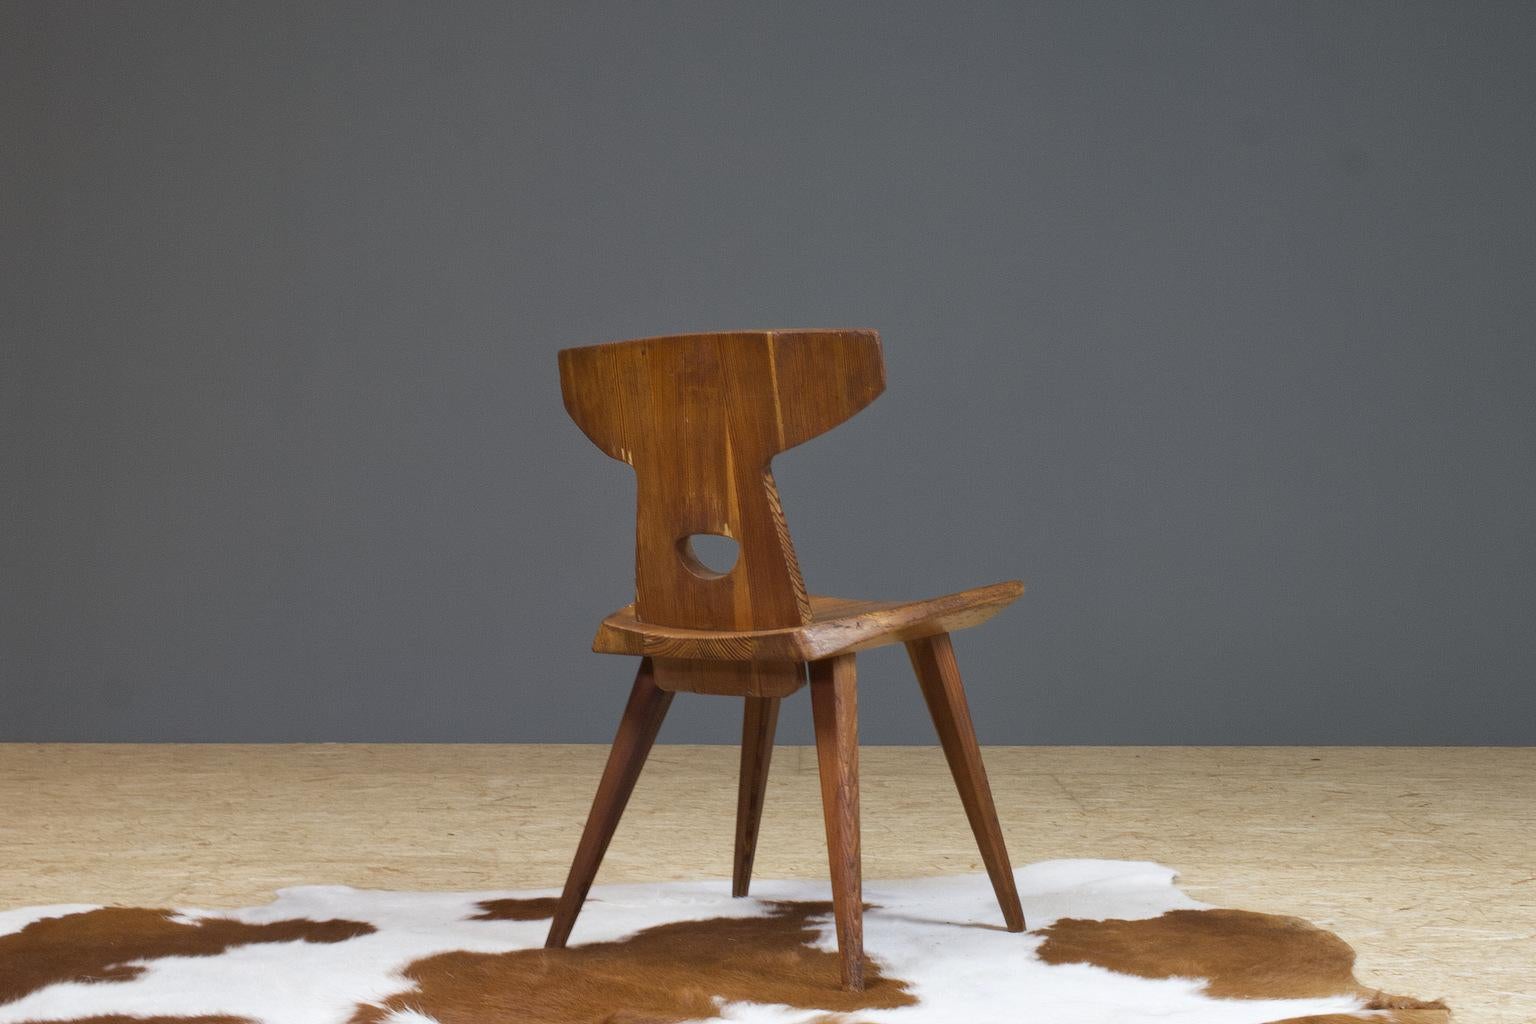 Lacquered Pine Wooden Chair by Jacob Kielland Brandt 1960 Scandinavian Modern